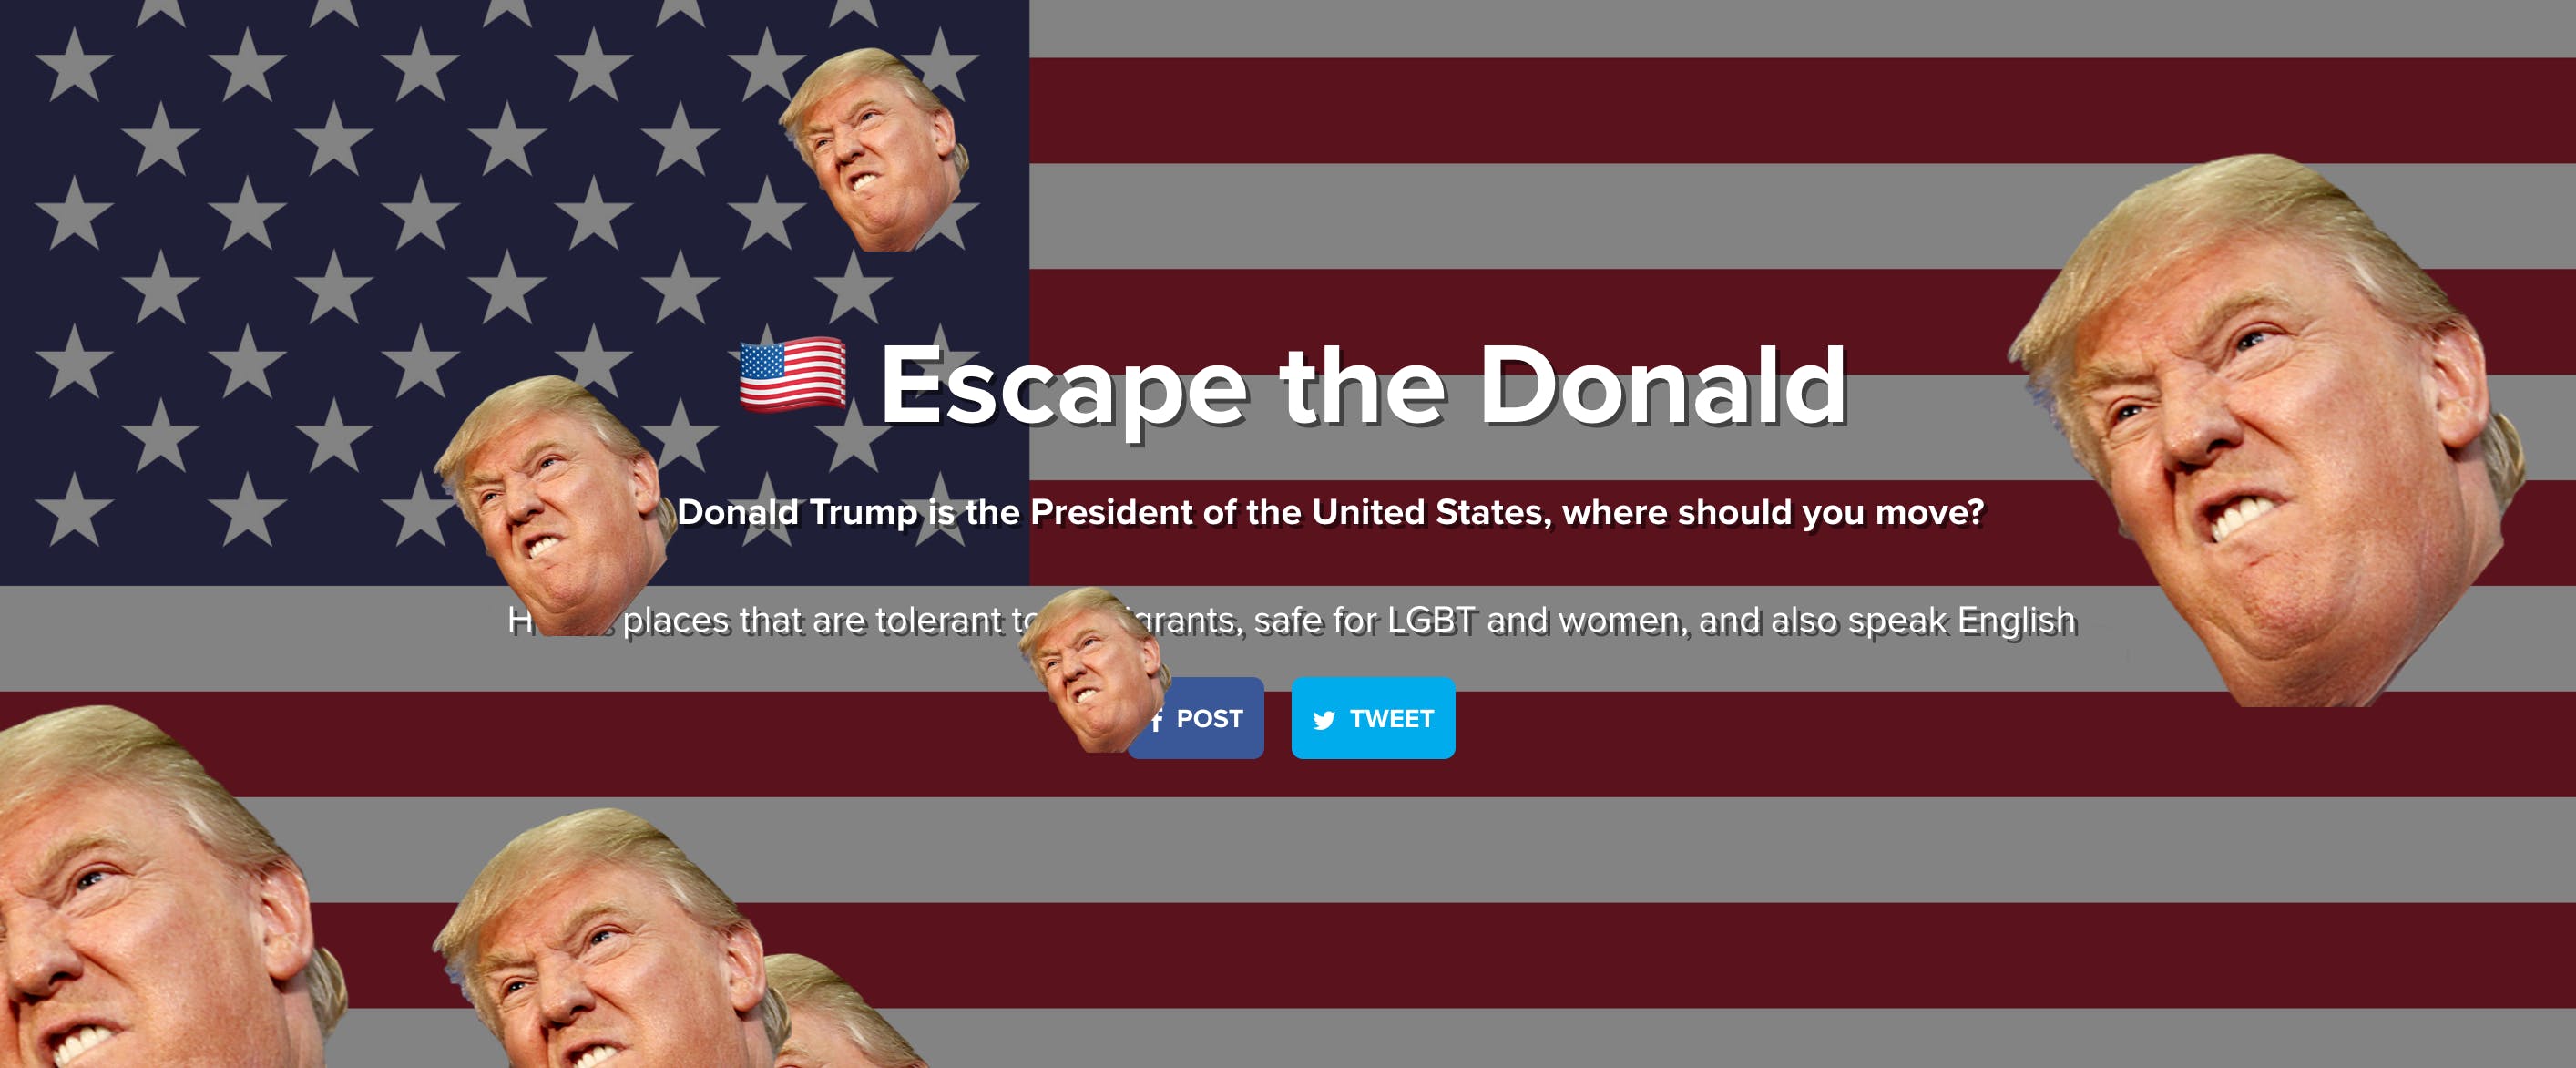 Escape the Donald media 2